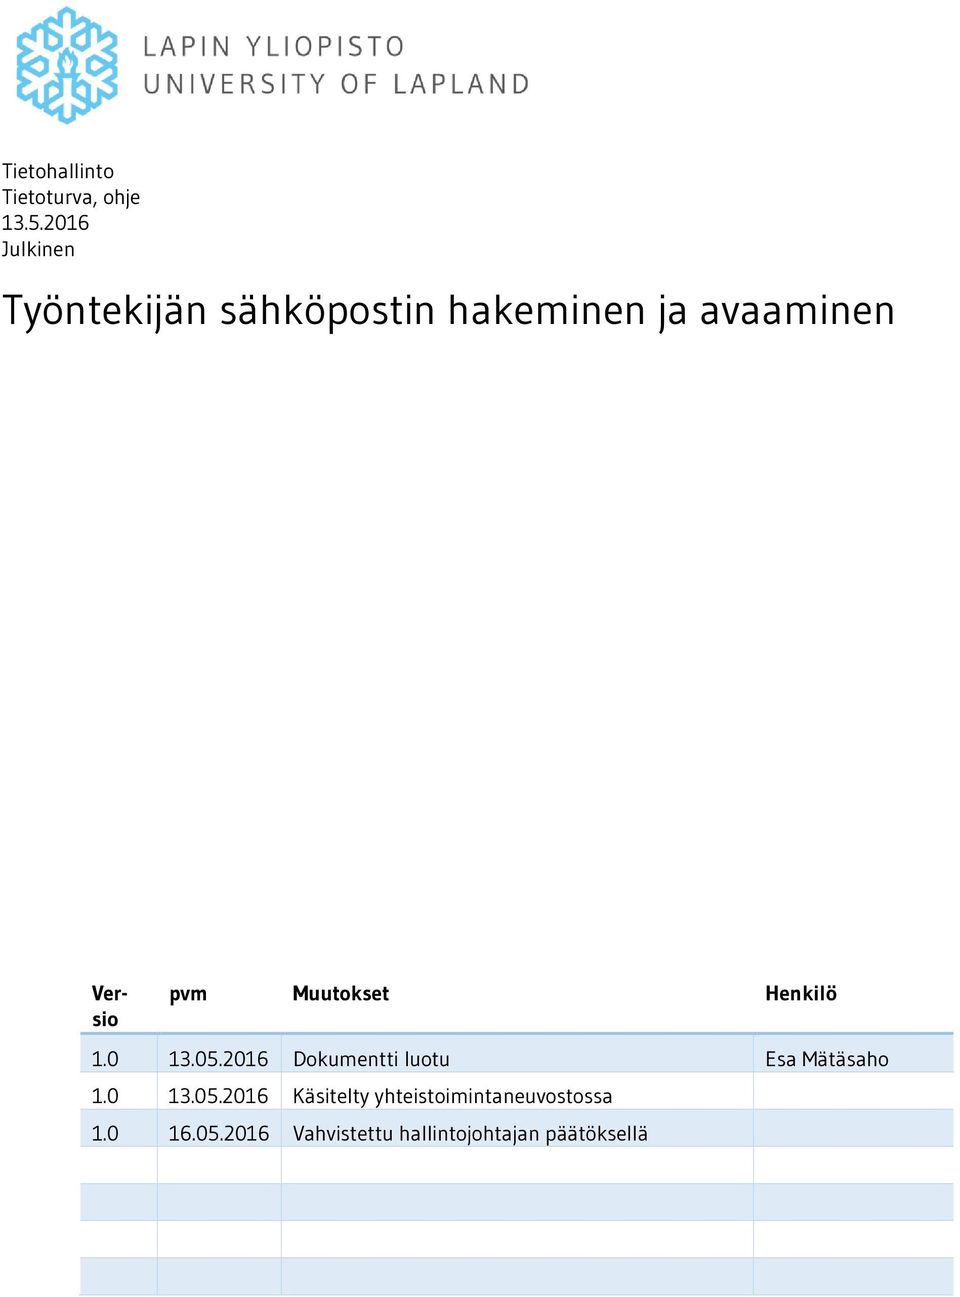 pvm Muutokset Henkilö 1.0 13.05.2016 Dokumentti luotu Esa Mätäsaho 1.